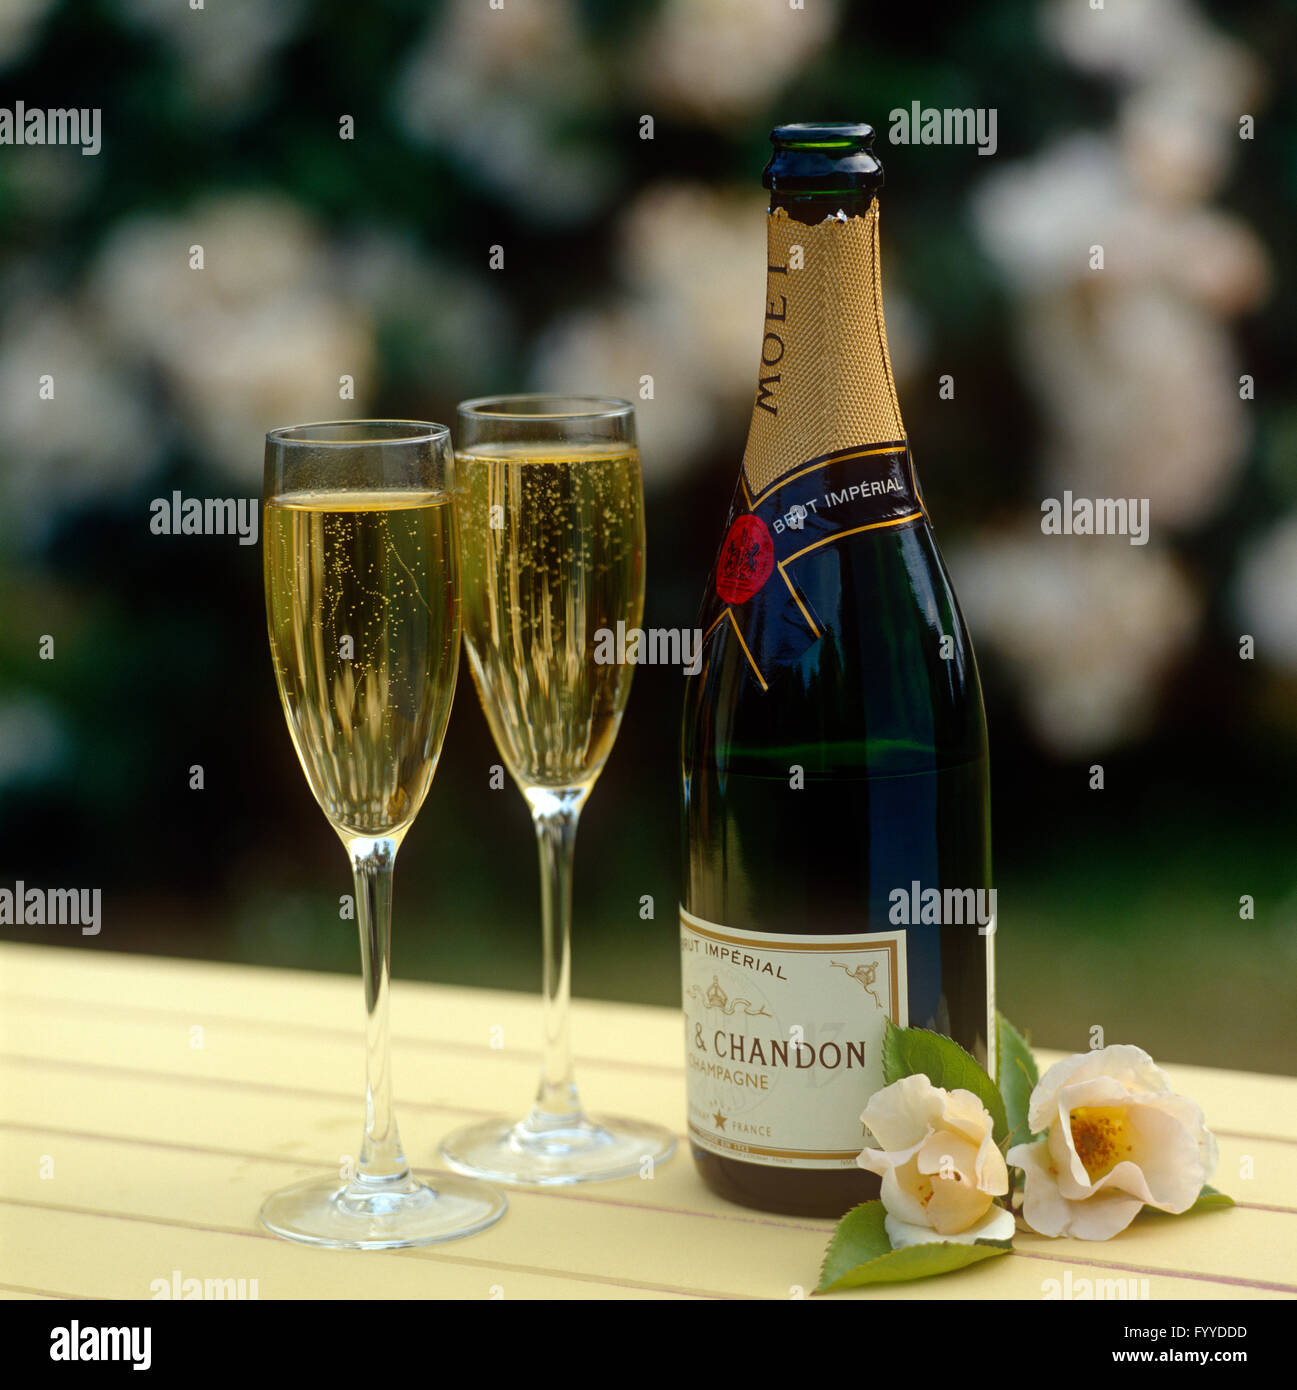 Due bicchieri di champagne Moet versata come una celebrazione, all'esterno. Foto Stock